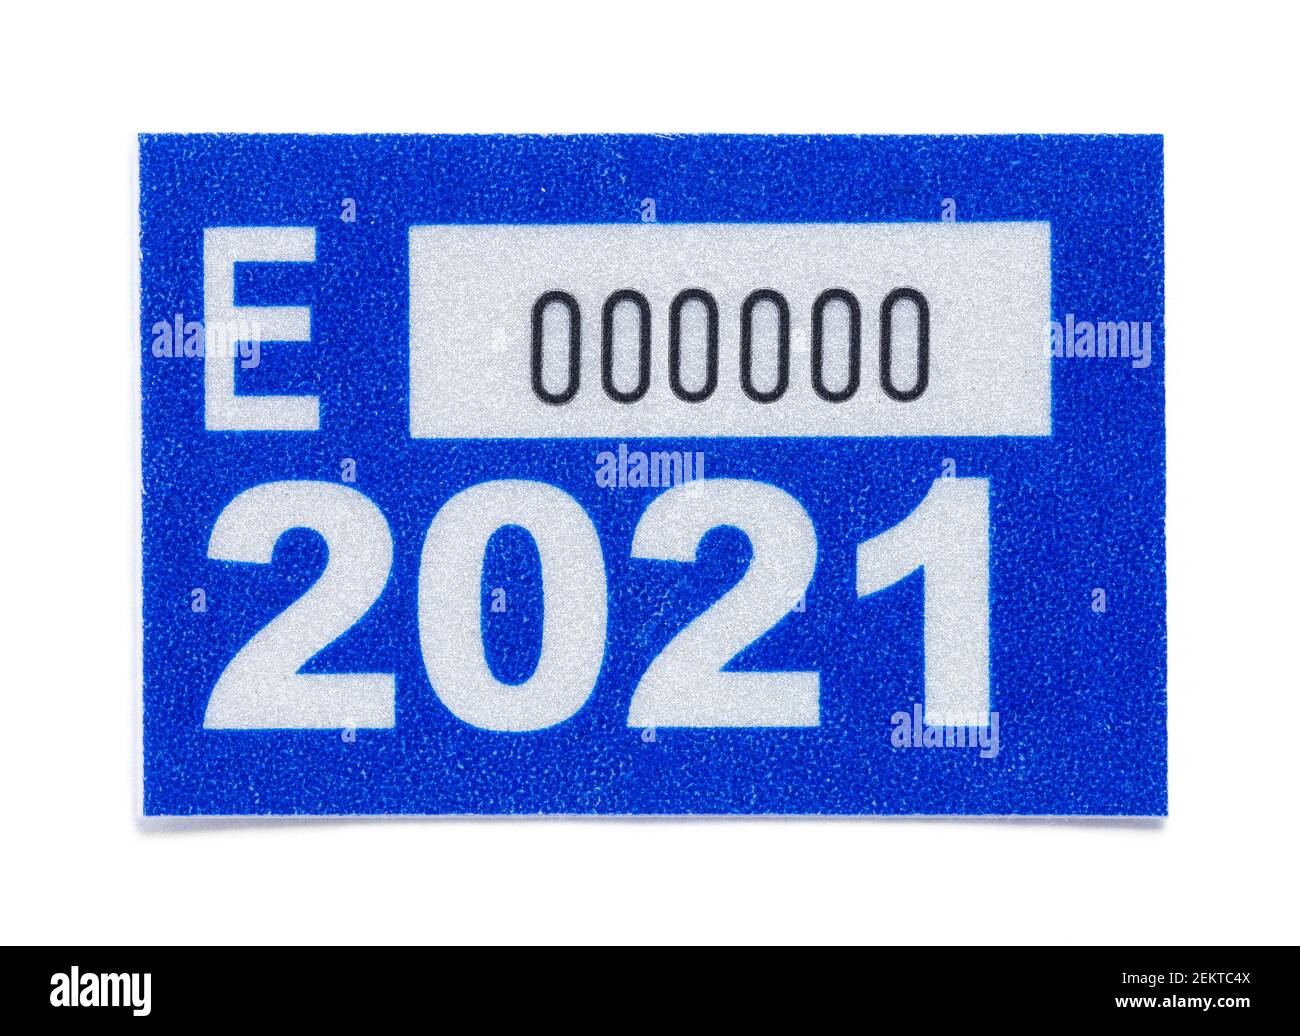 Adesivo blu per etichetta di registrazione del veicolo per la marcatura della targa. Foto Stock